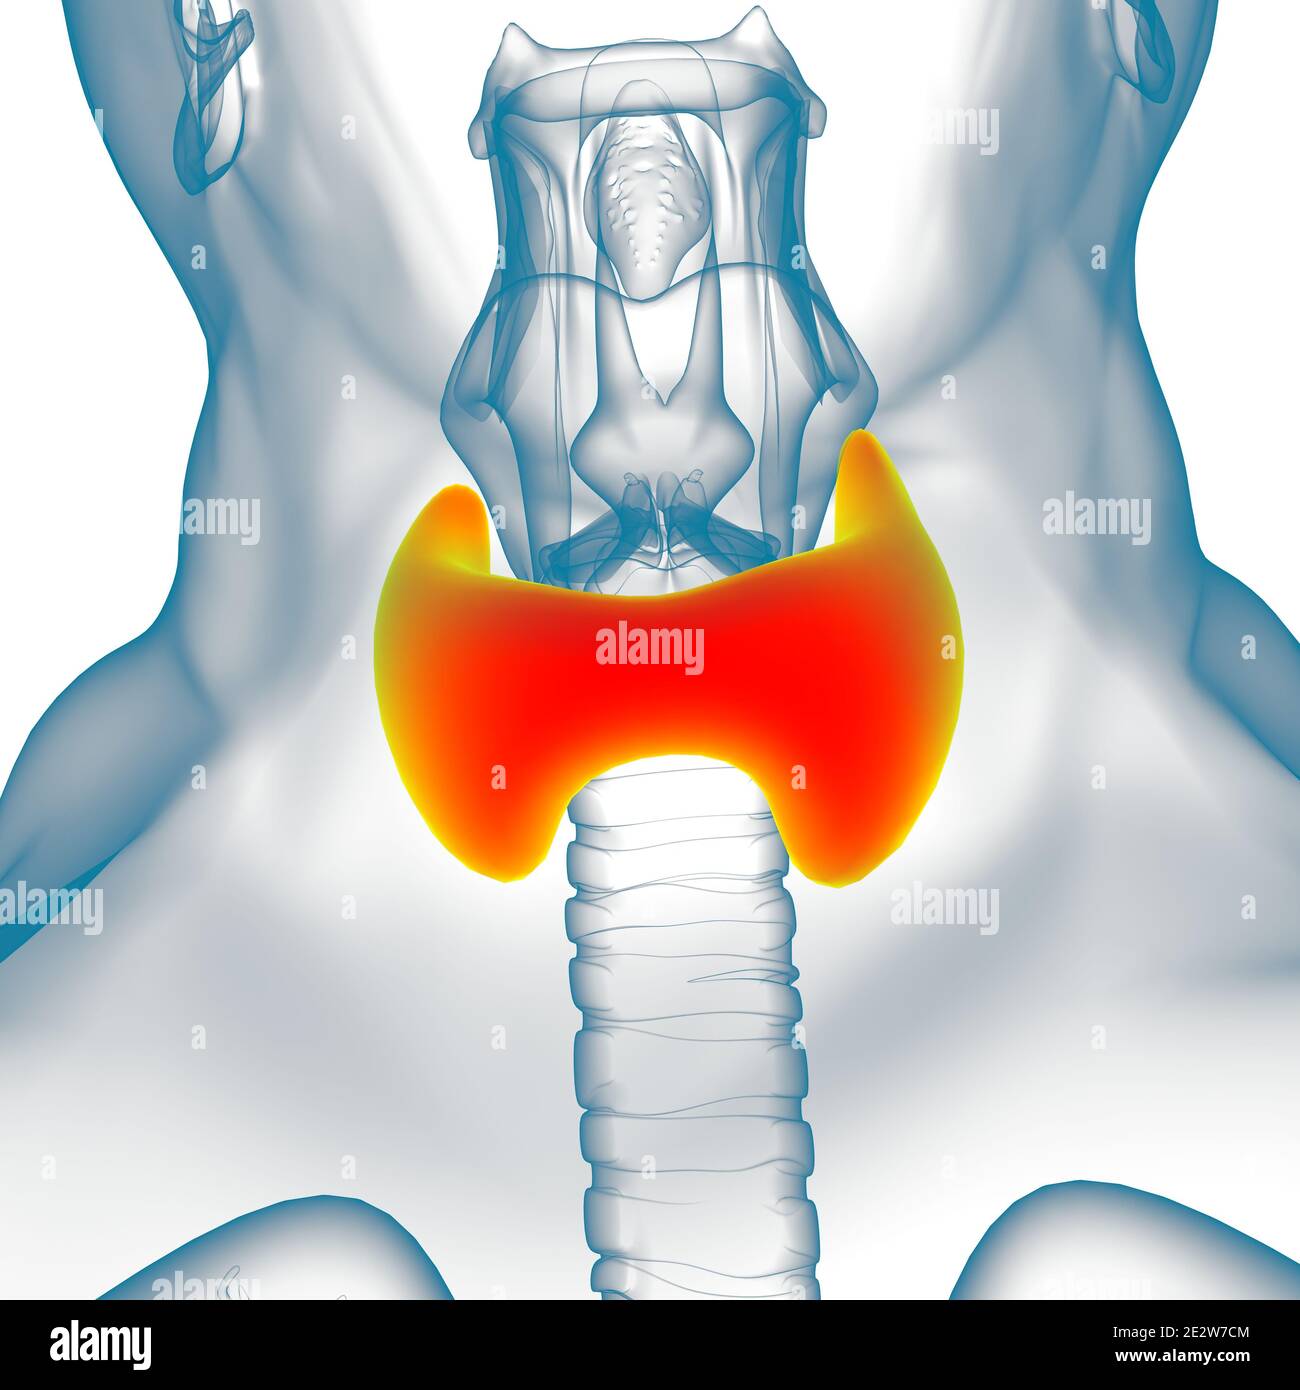 Anatomie de la glande thyroïde pour l'illustration 3D de concept médical Banque D'Images